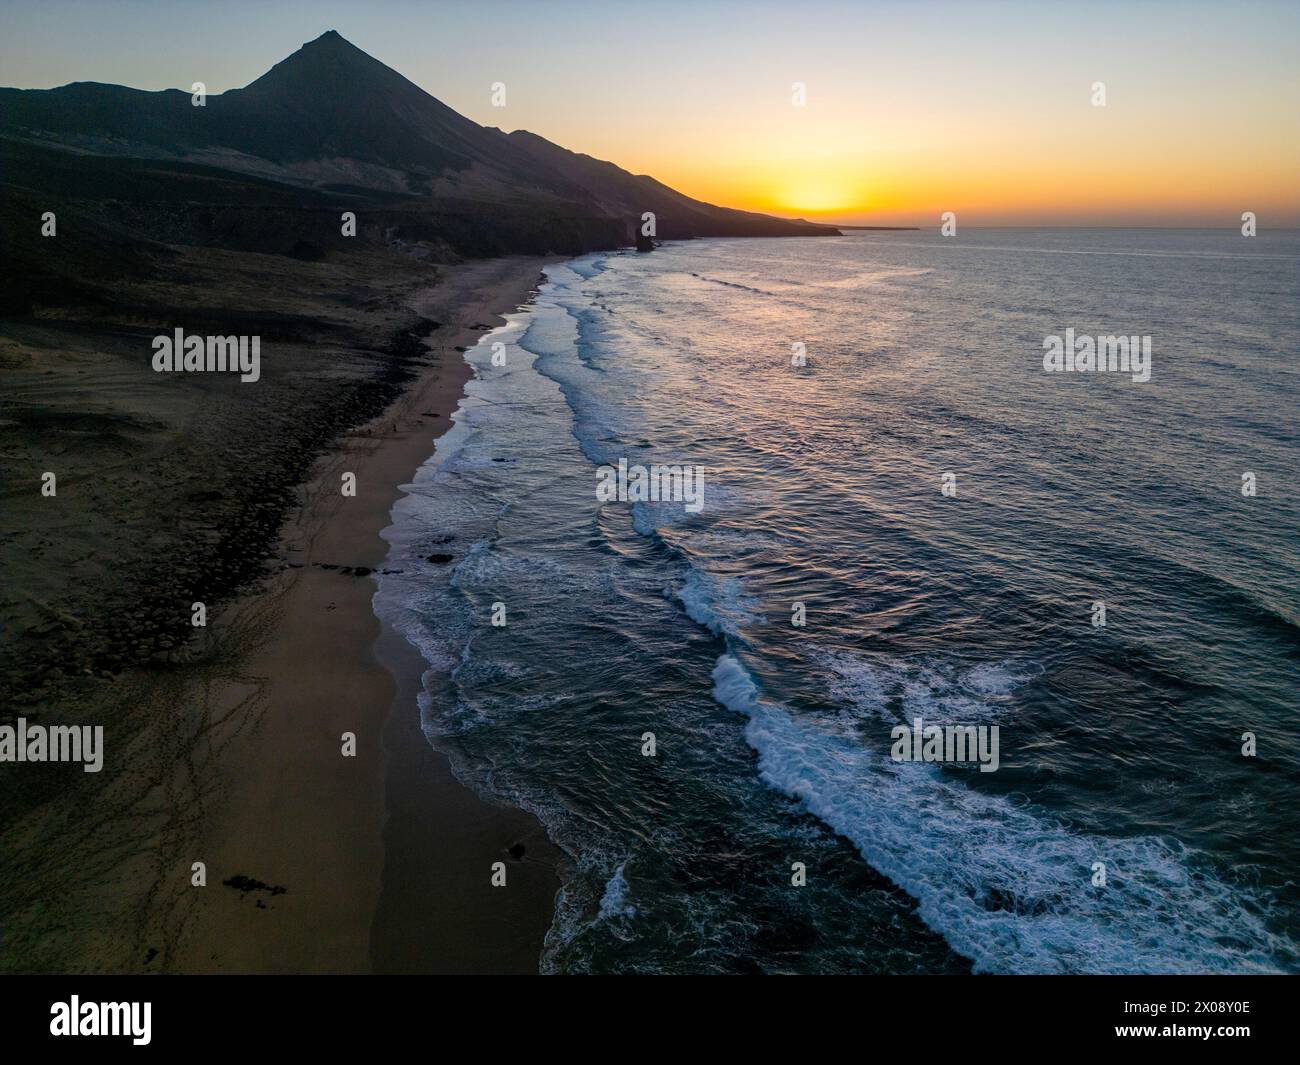 Ein Luftbild fängt die ruhige Schönheit des Strandes Cofete ein, der während des Sonnenuntergangs vor den zerklüfteten Bergen der Südküste von Fuerteventura liegt Stockfoto